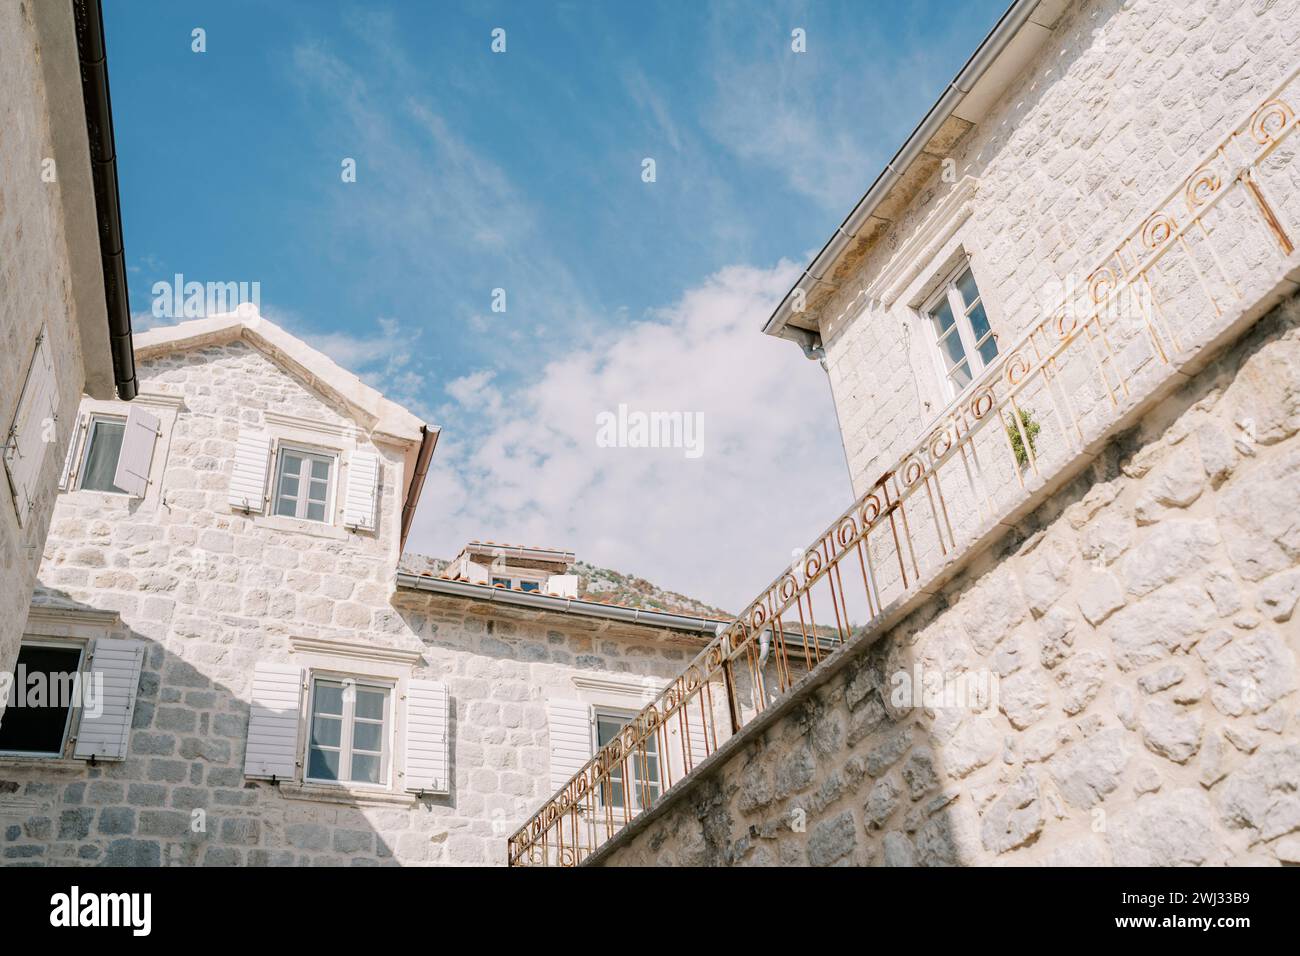 Anciennes maisons en pierre avec greniers contre un ciel bleu Banque D'Images